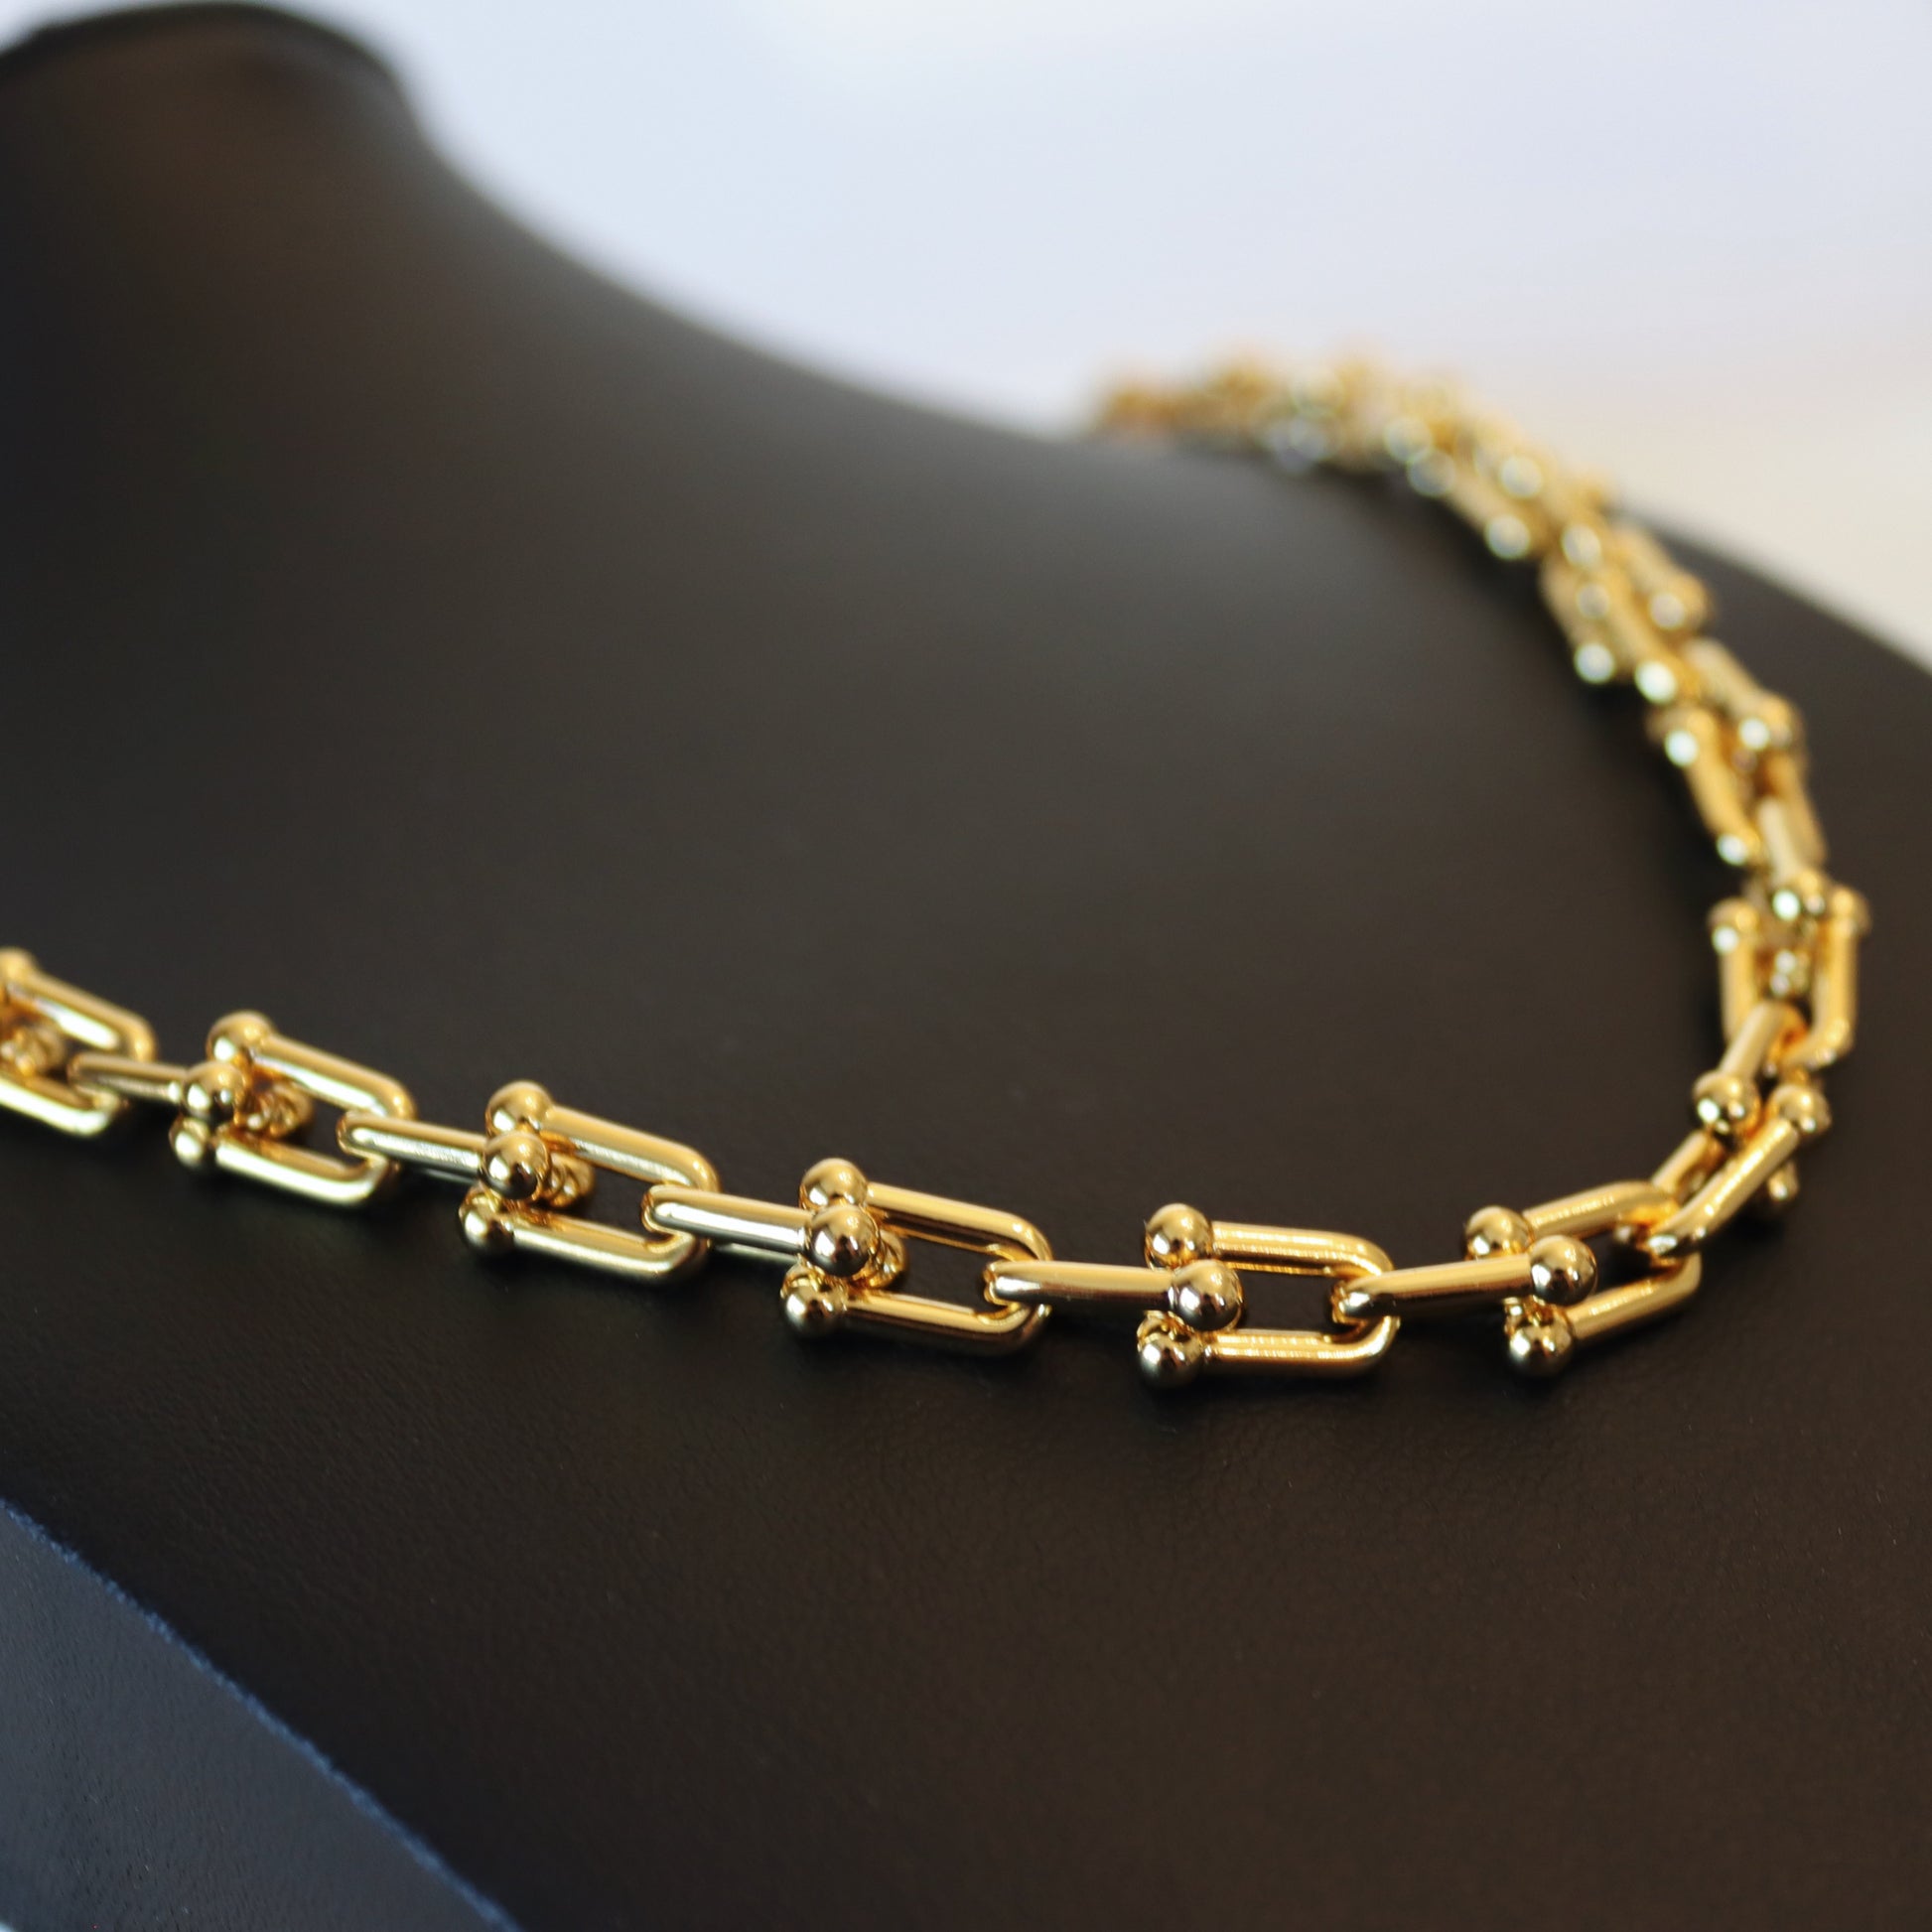 Interlocking Tiff Design Necklace - Kalopsia Accessories